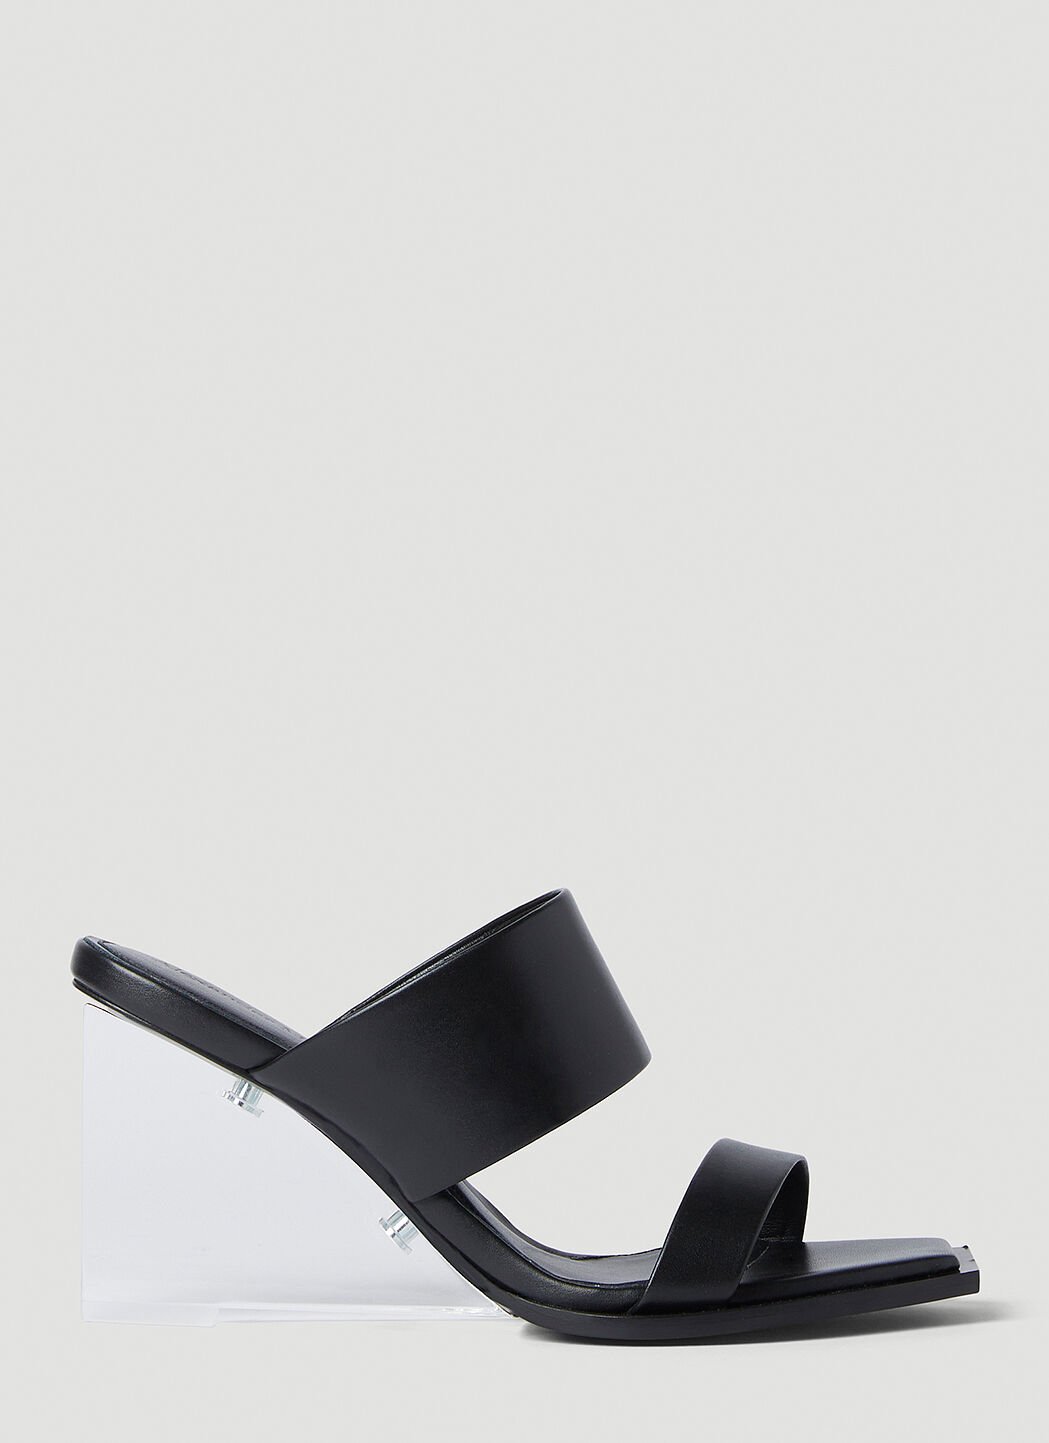 Alexander McQueen Shard High Heel Sandals Black amq0252012